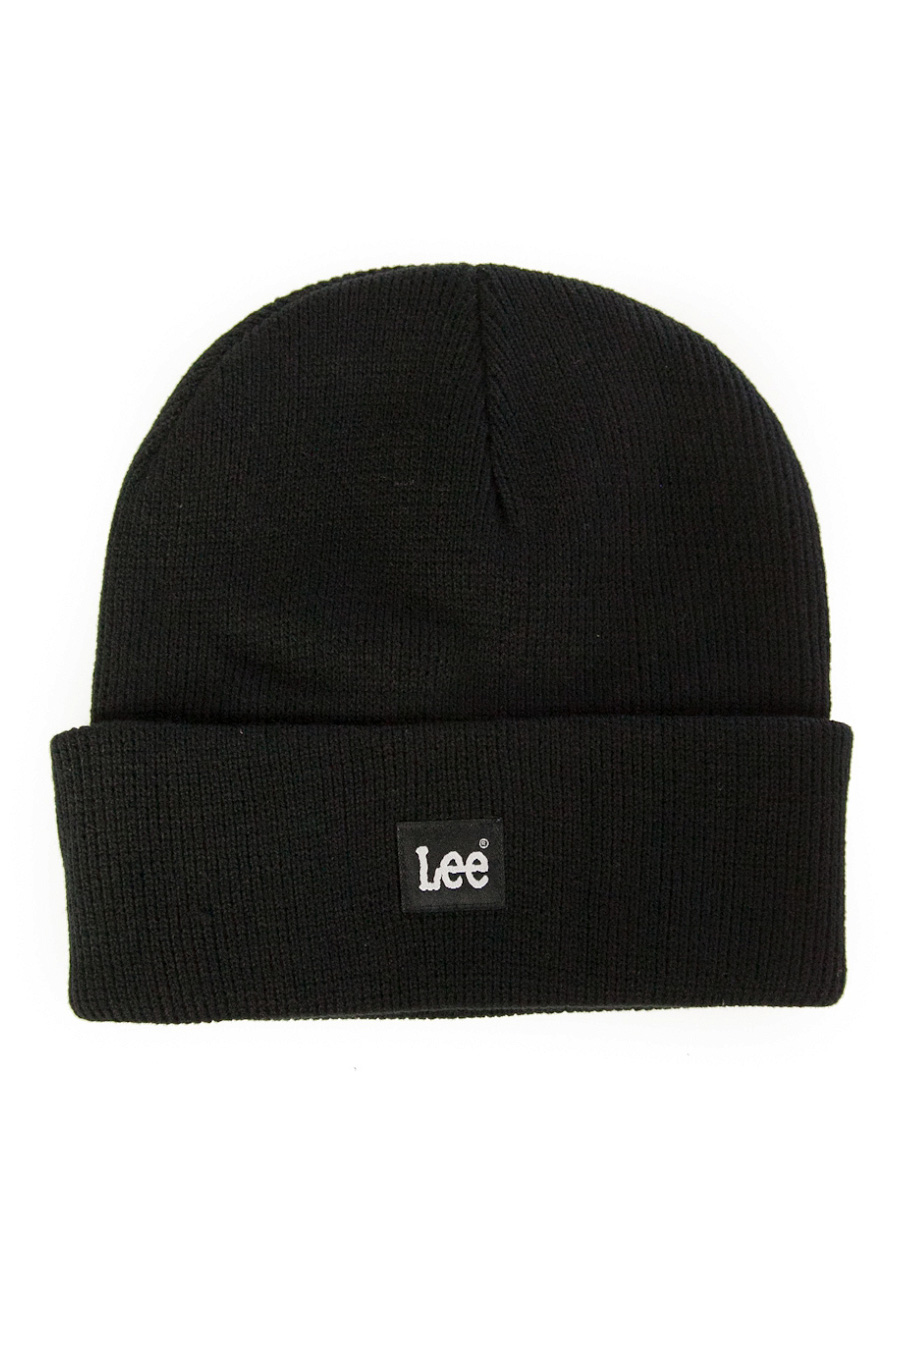 Žieminė kepurė LEE LP594001